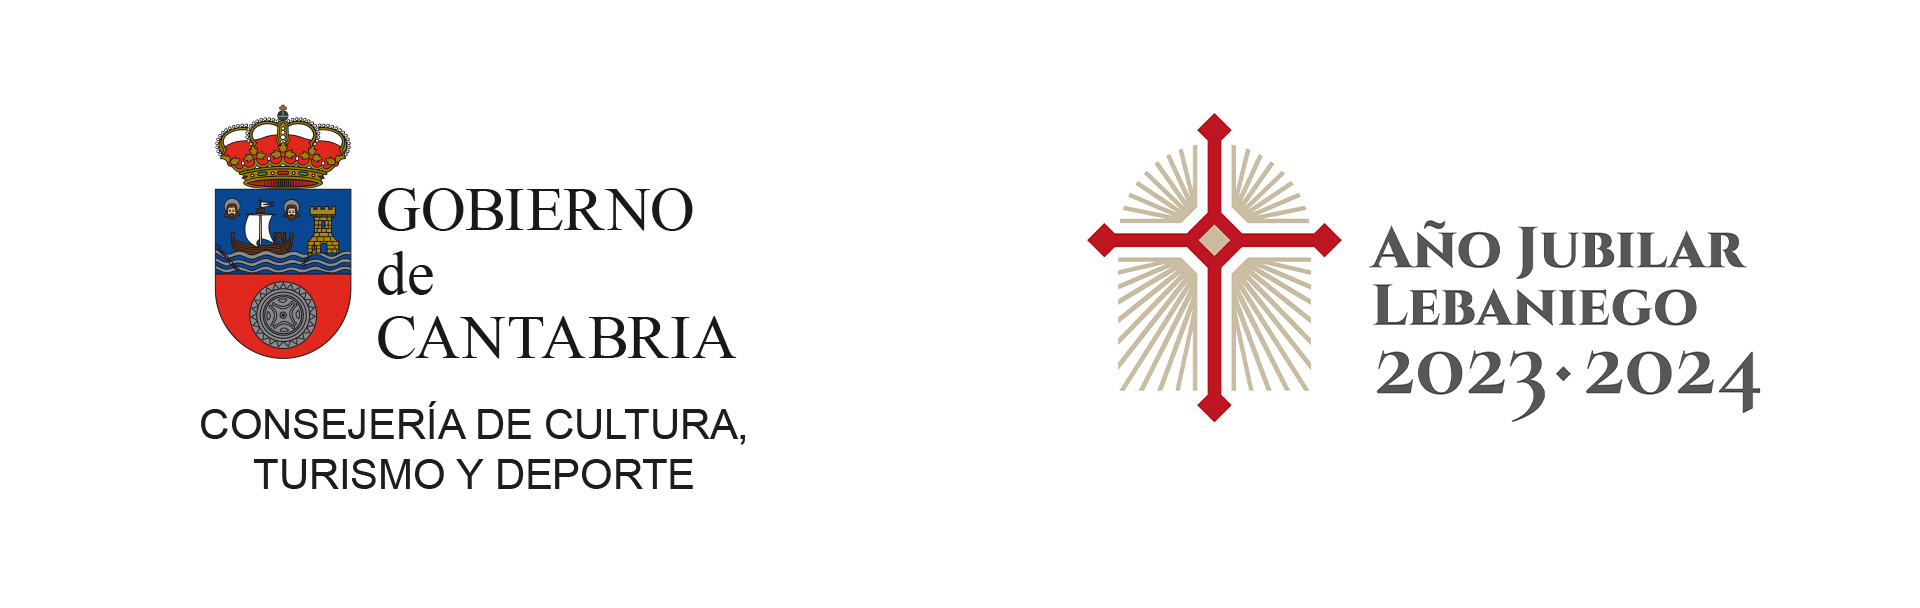 Logos del gobierno de Cantabria